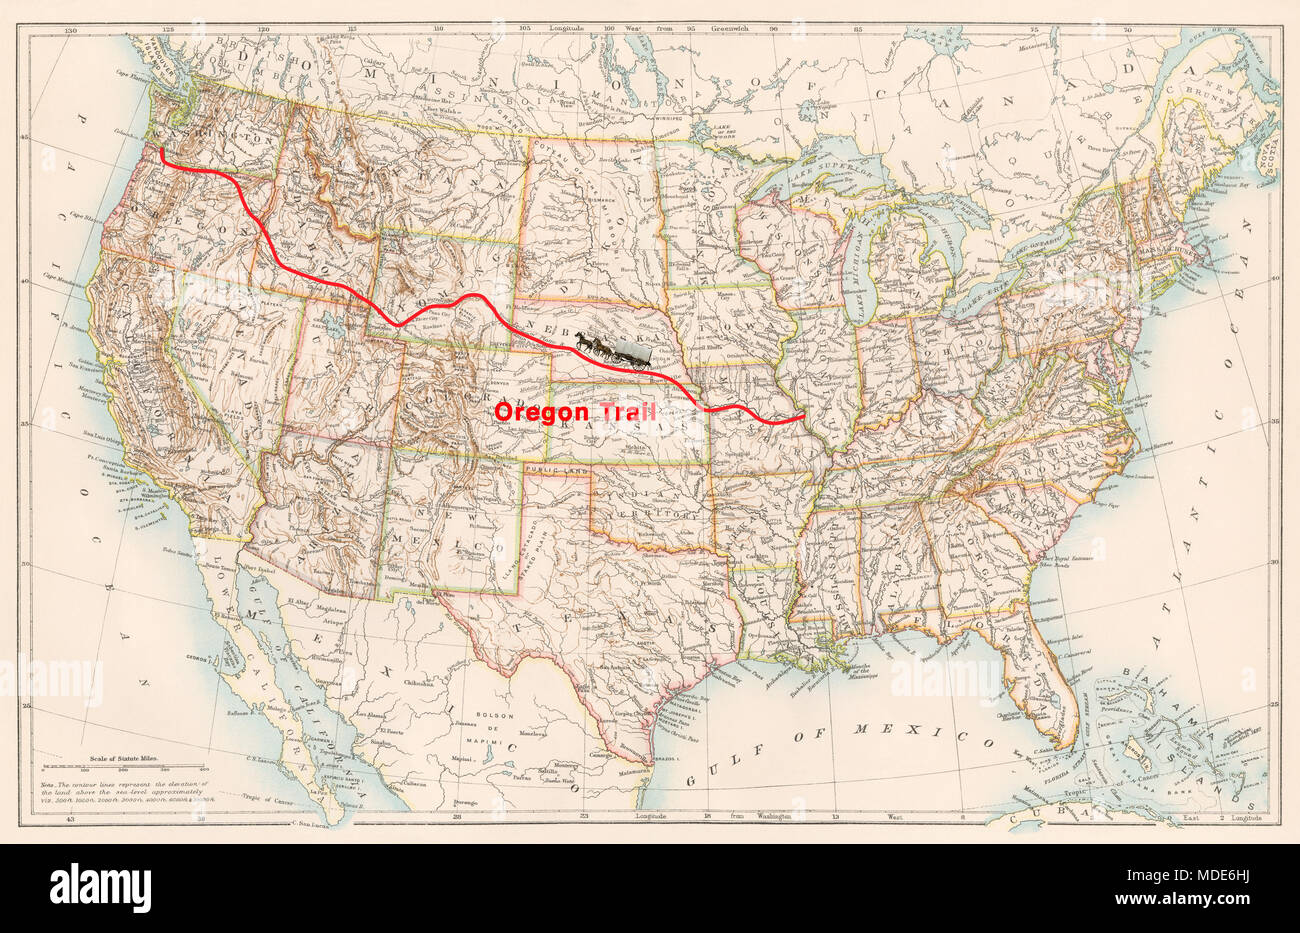 Oregon Trail Route auf einer 1870er Karte der USA. Digitale Illustration Stockfoto